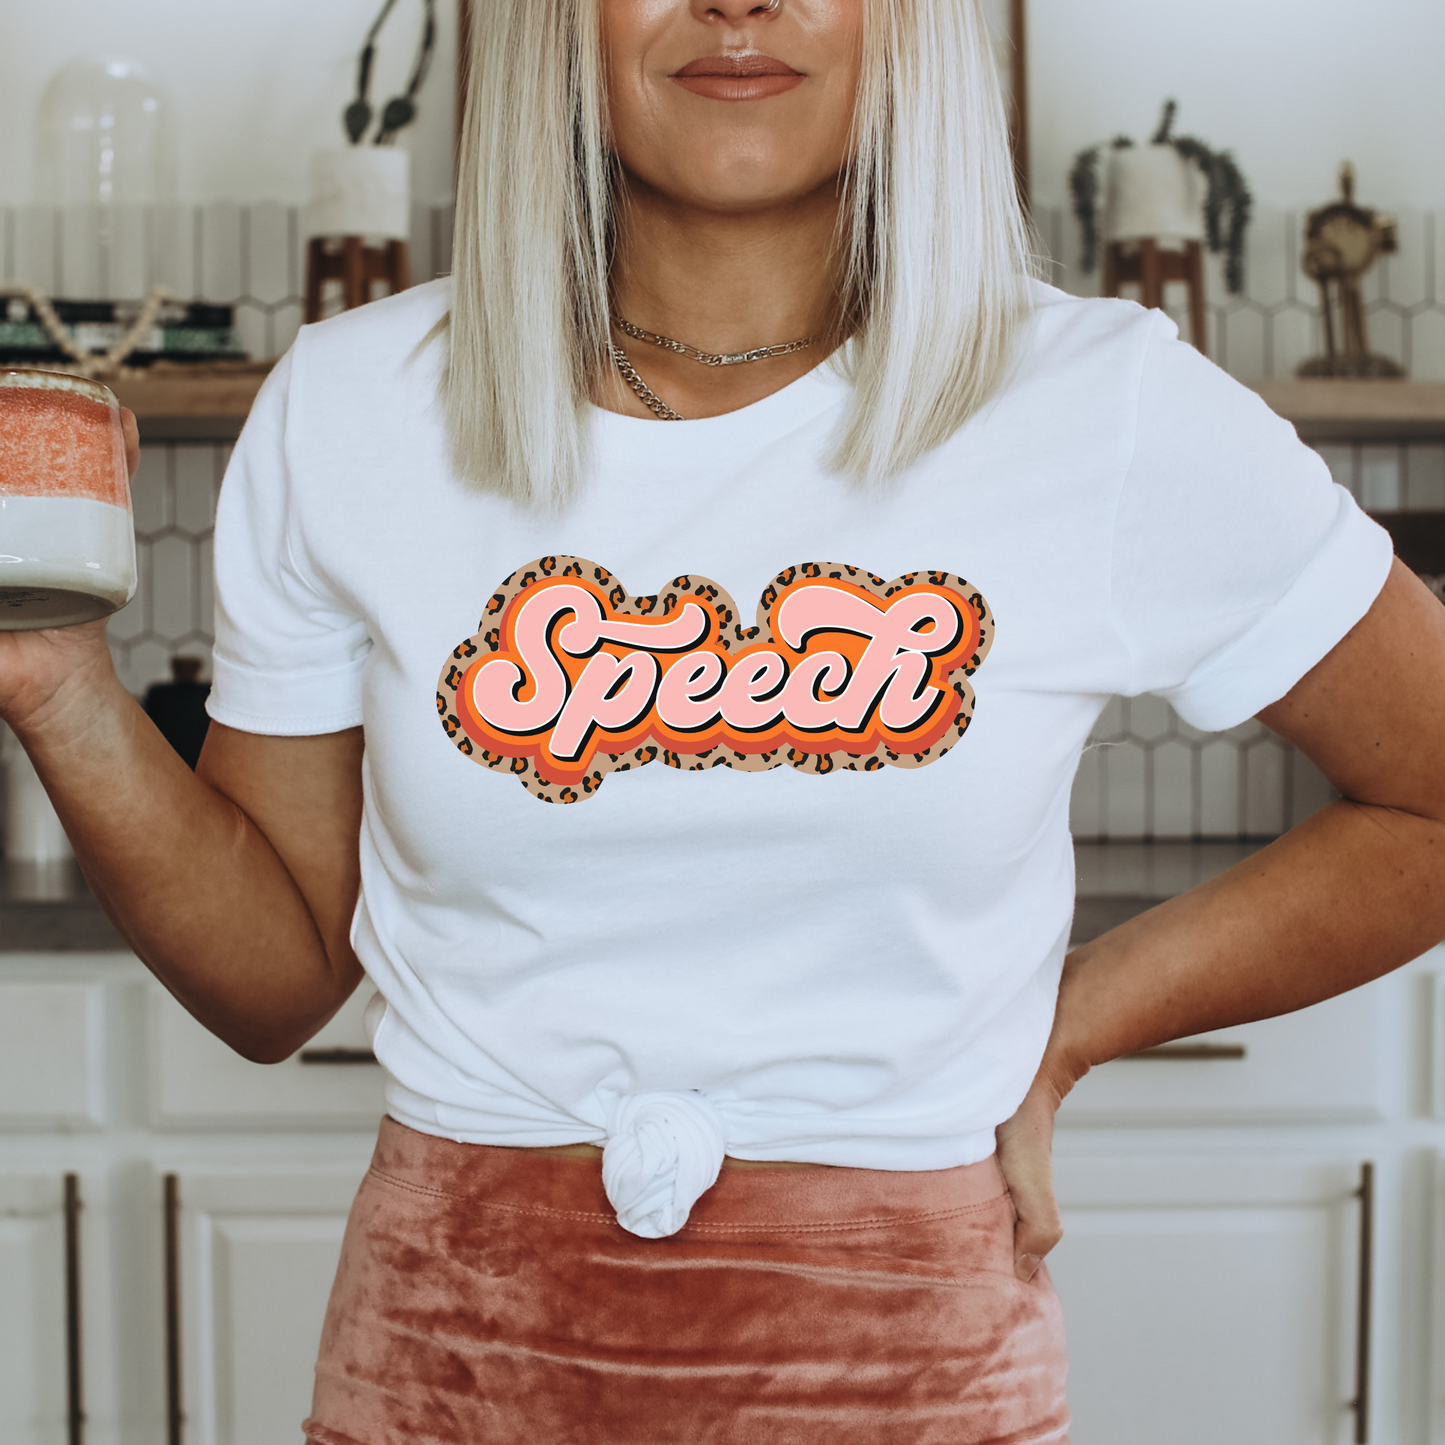 Cheetah Speech Jersey T-Shirt